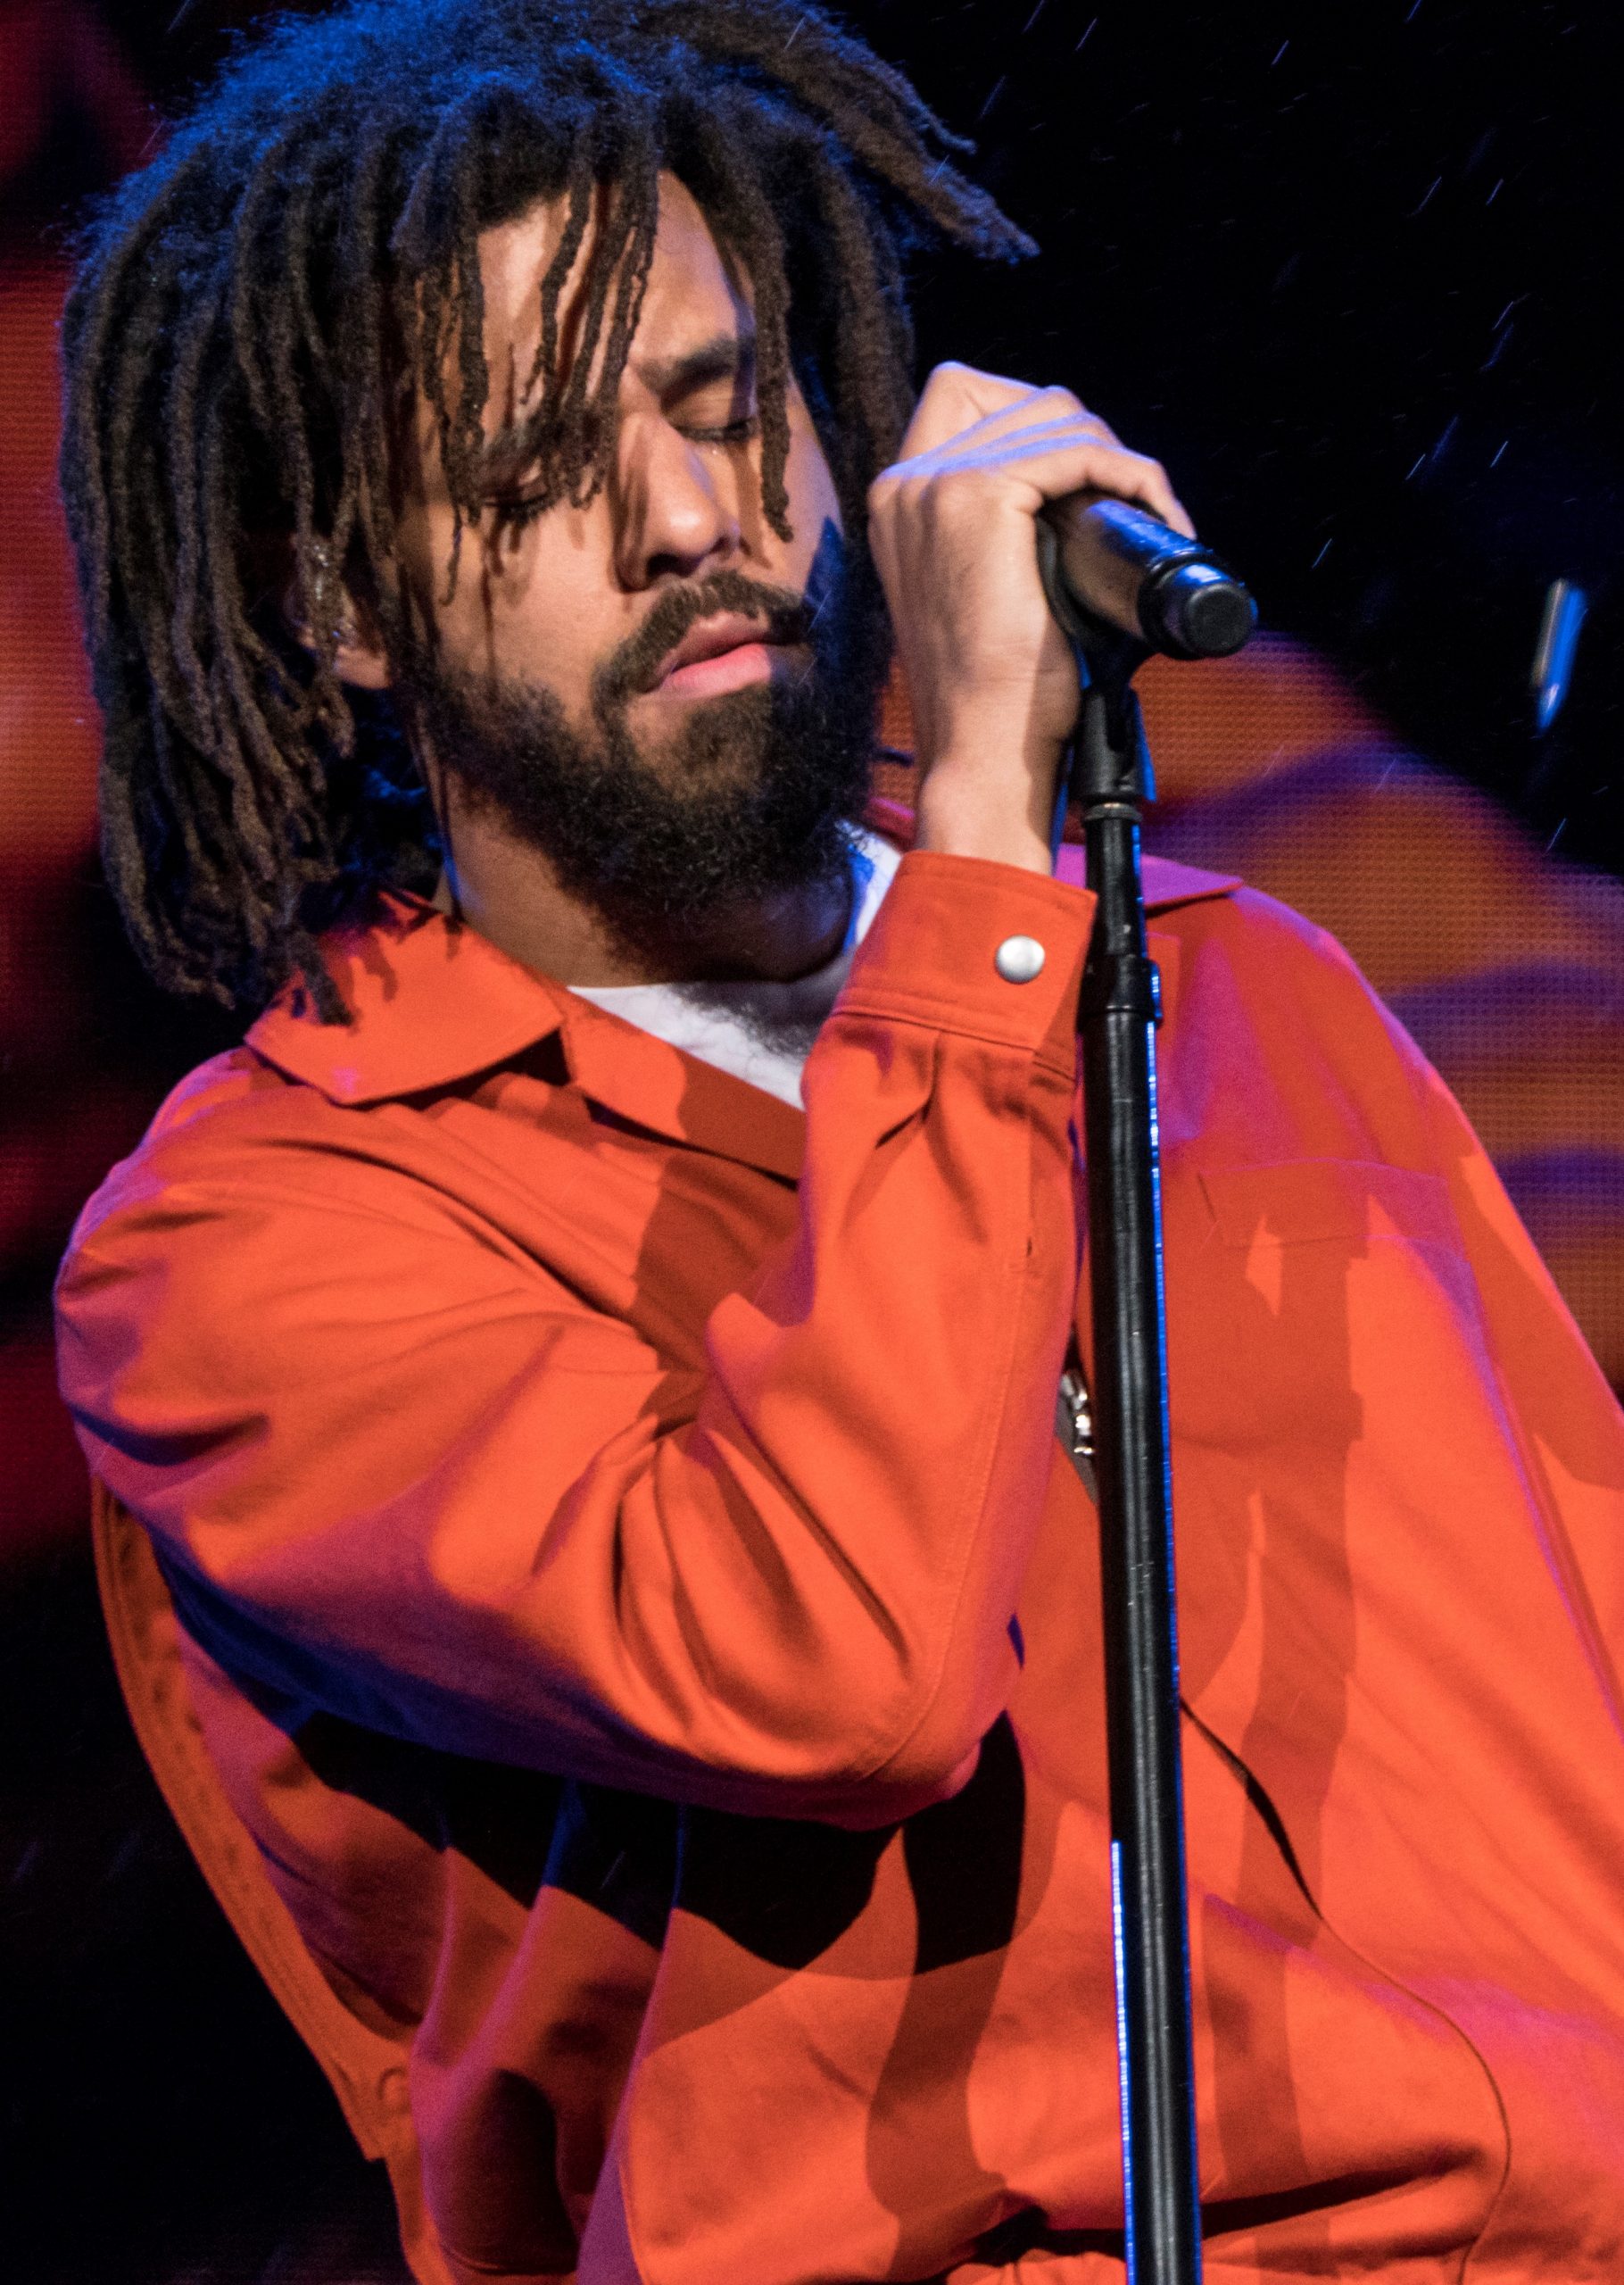 Rapstar J. Cole